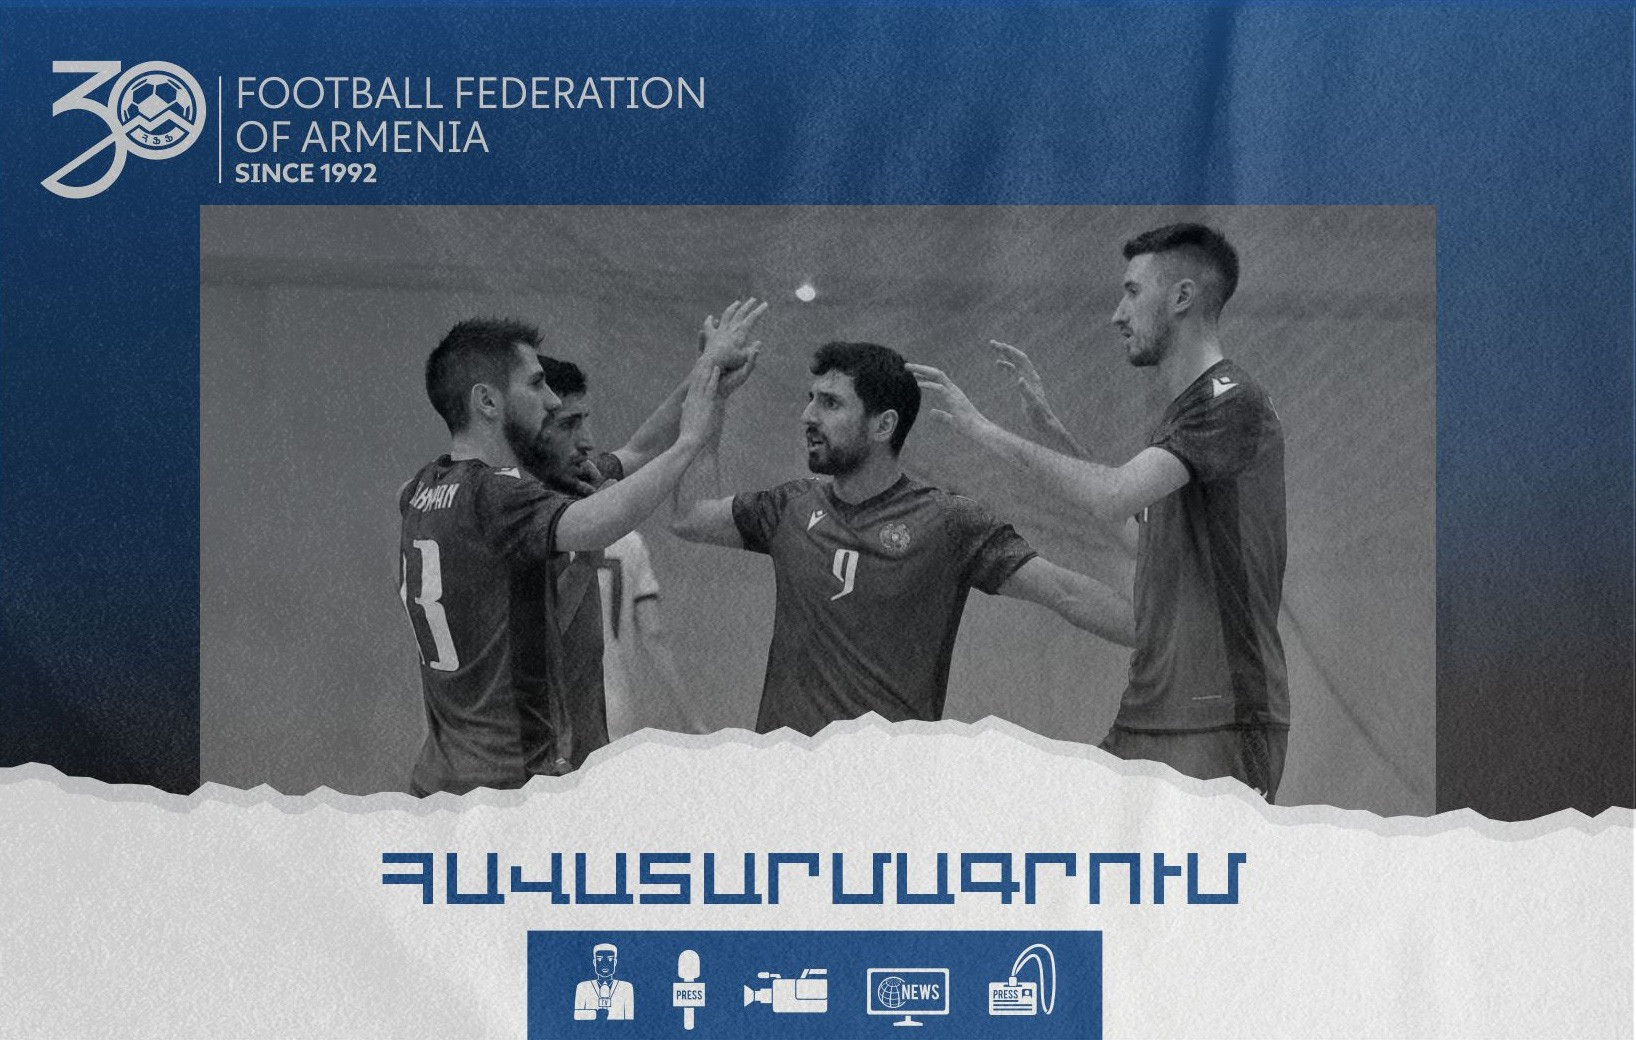 ՀՖՖ-ն սկսում է հավատարմագրումը ֆուտզալի Հայաստան-Չեխիա հանդիպման համար